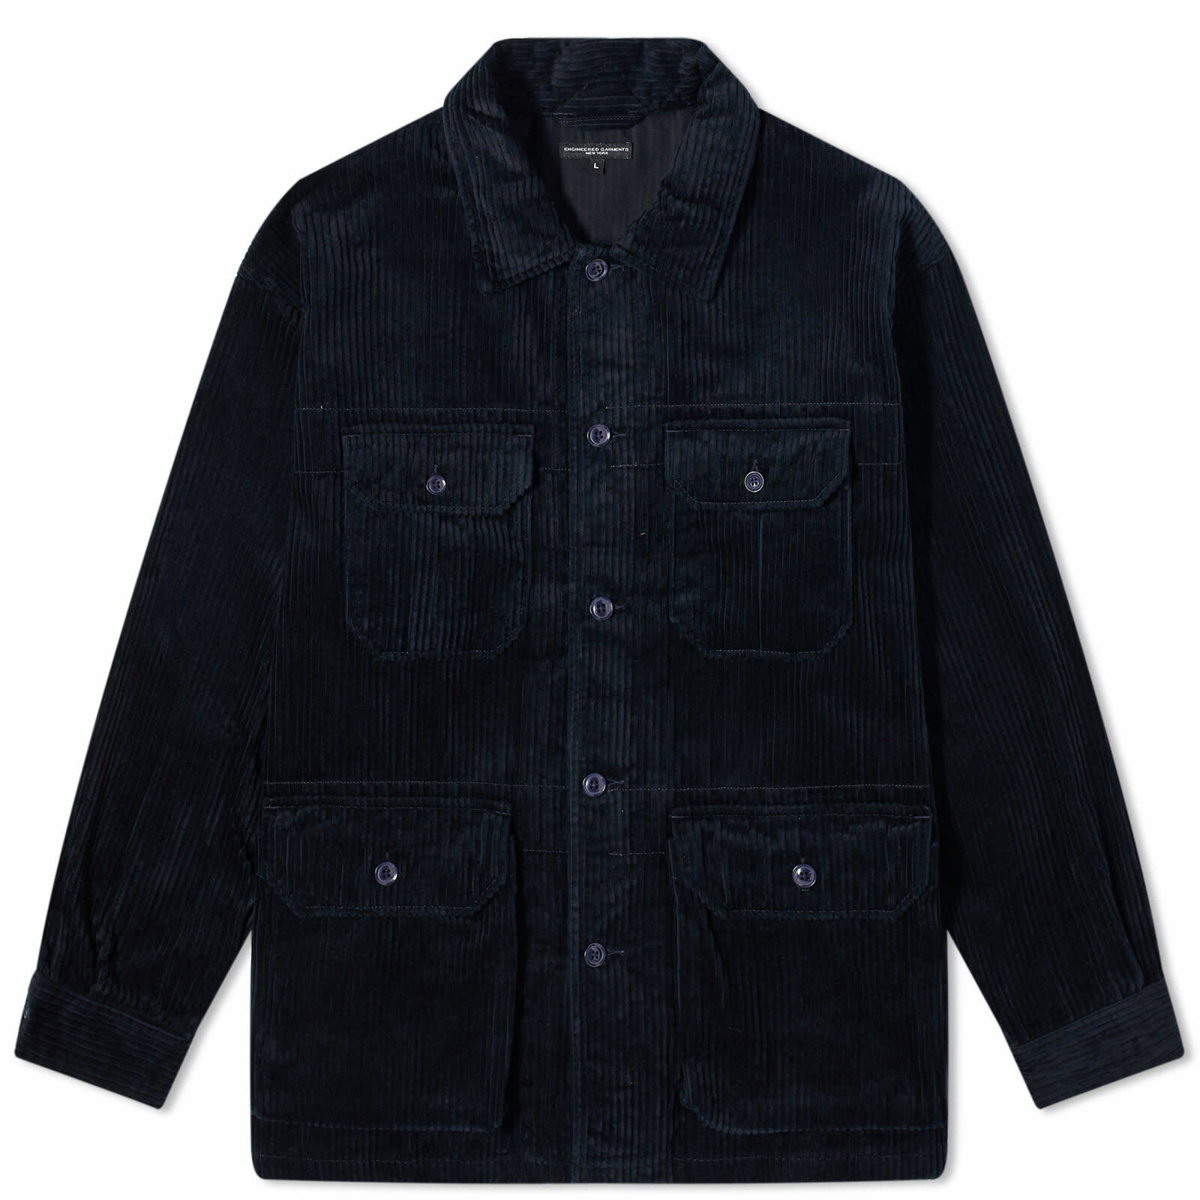 Engineered Garments Men's Suffolk Shirt Jacket in Dark Navy Corduroy ...